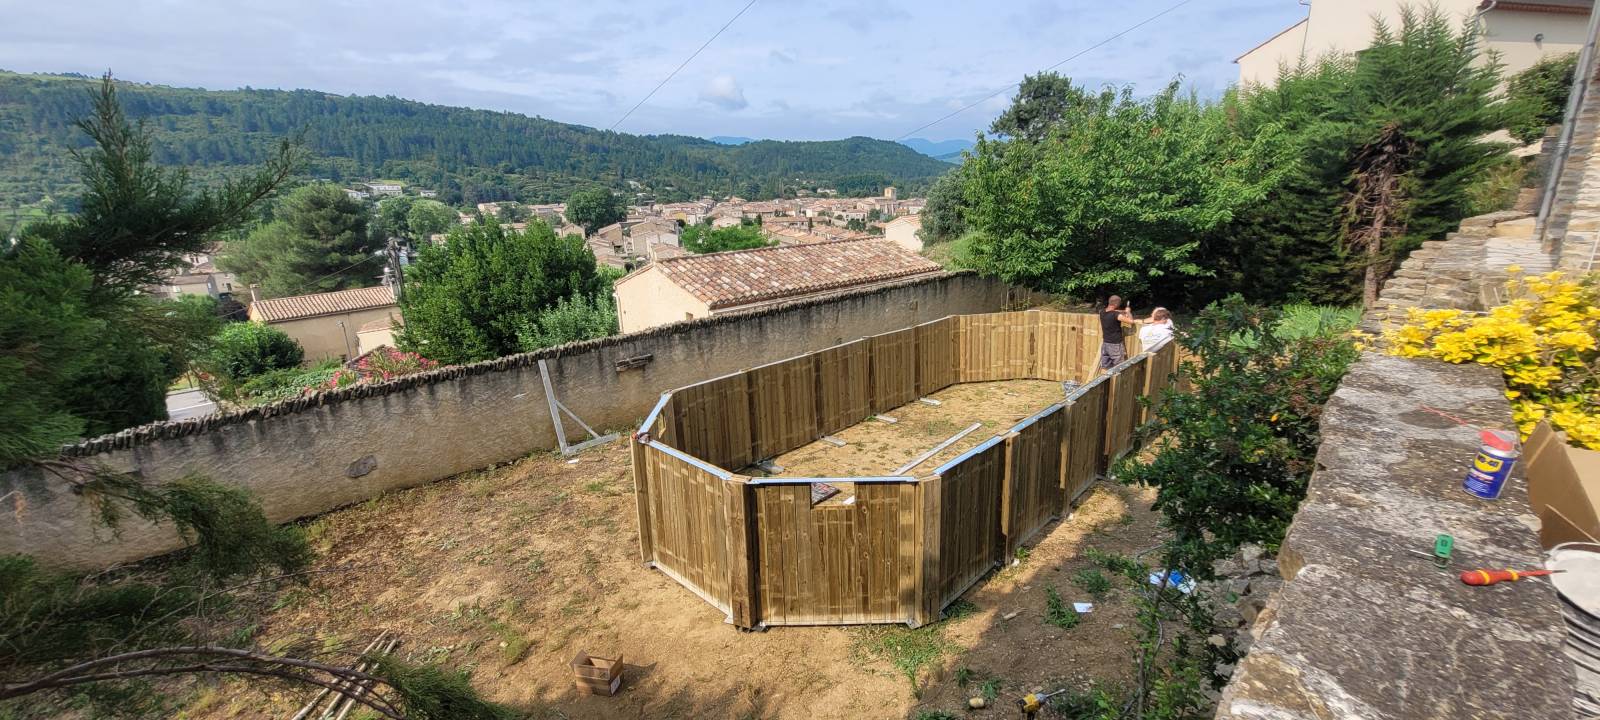 Fabricant de kit piscines en bois dans le sud de la France